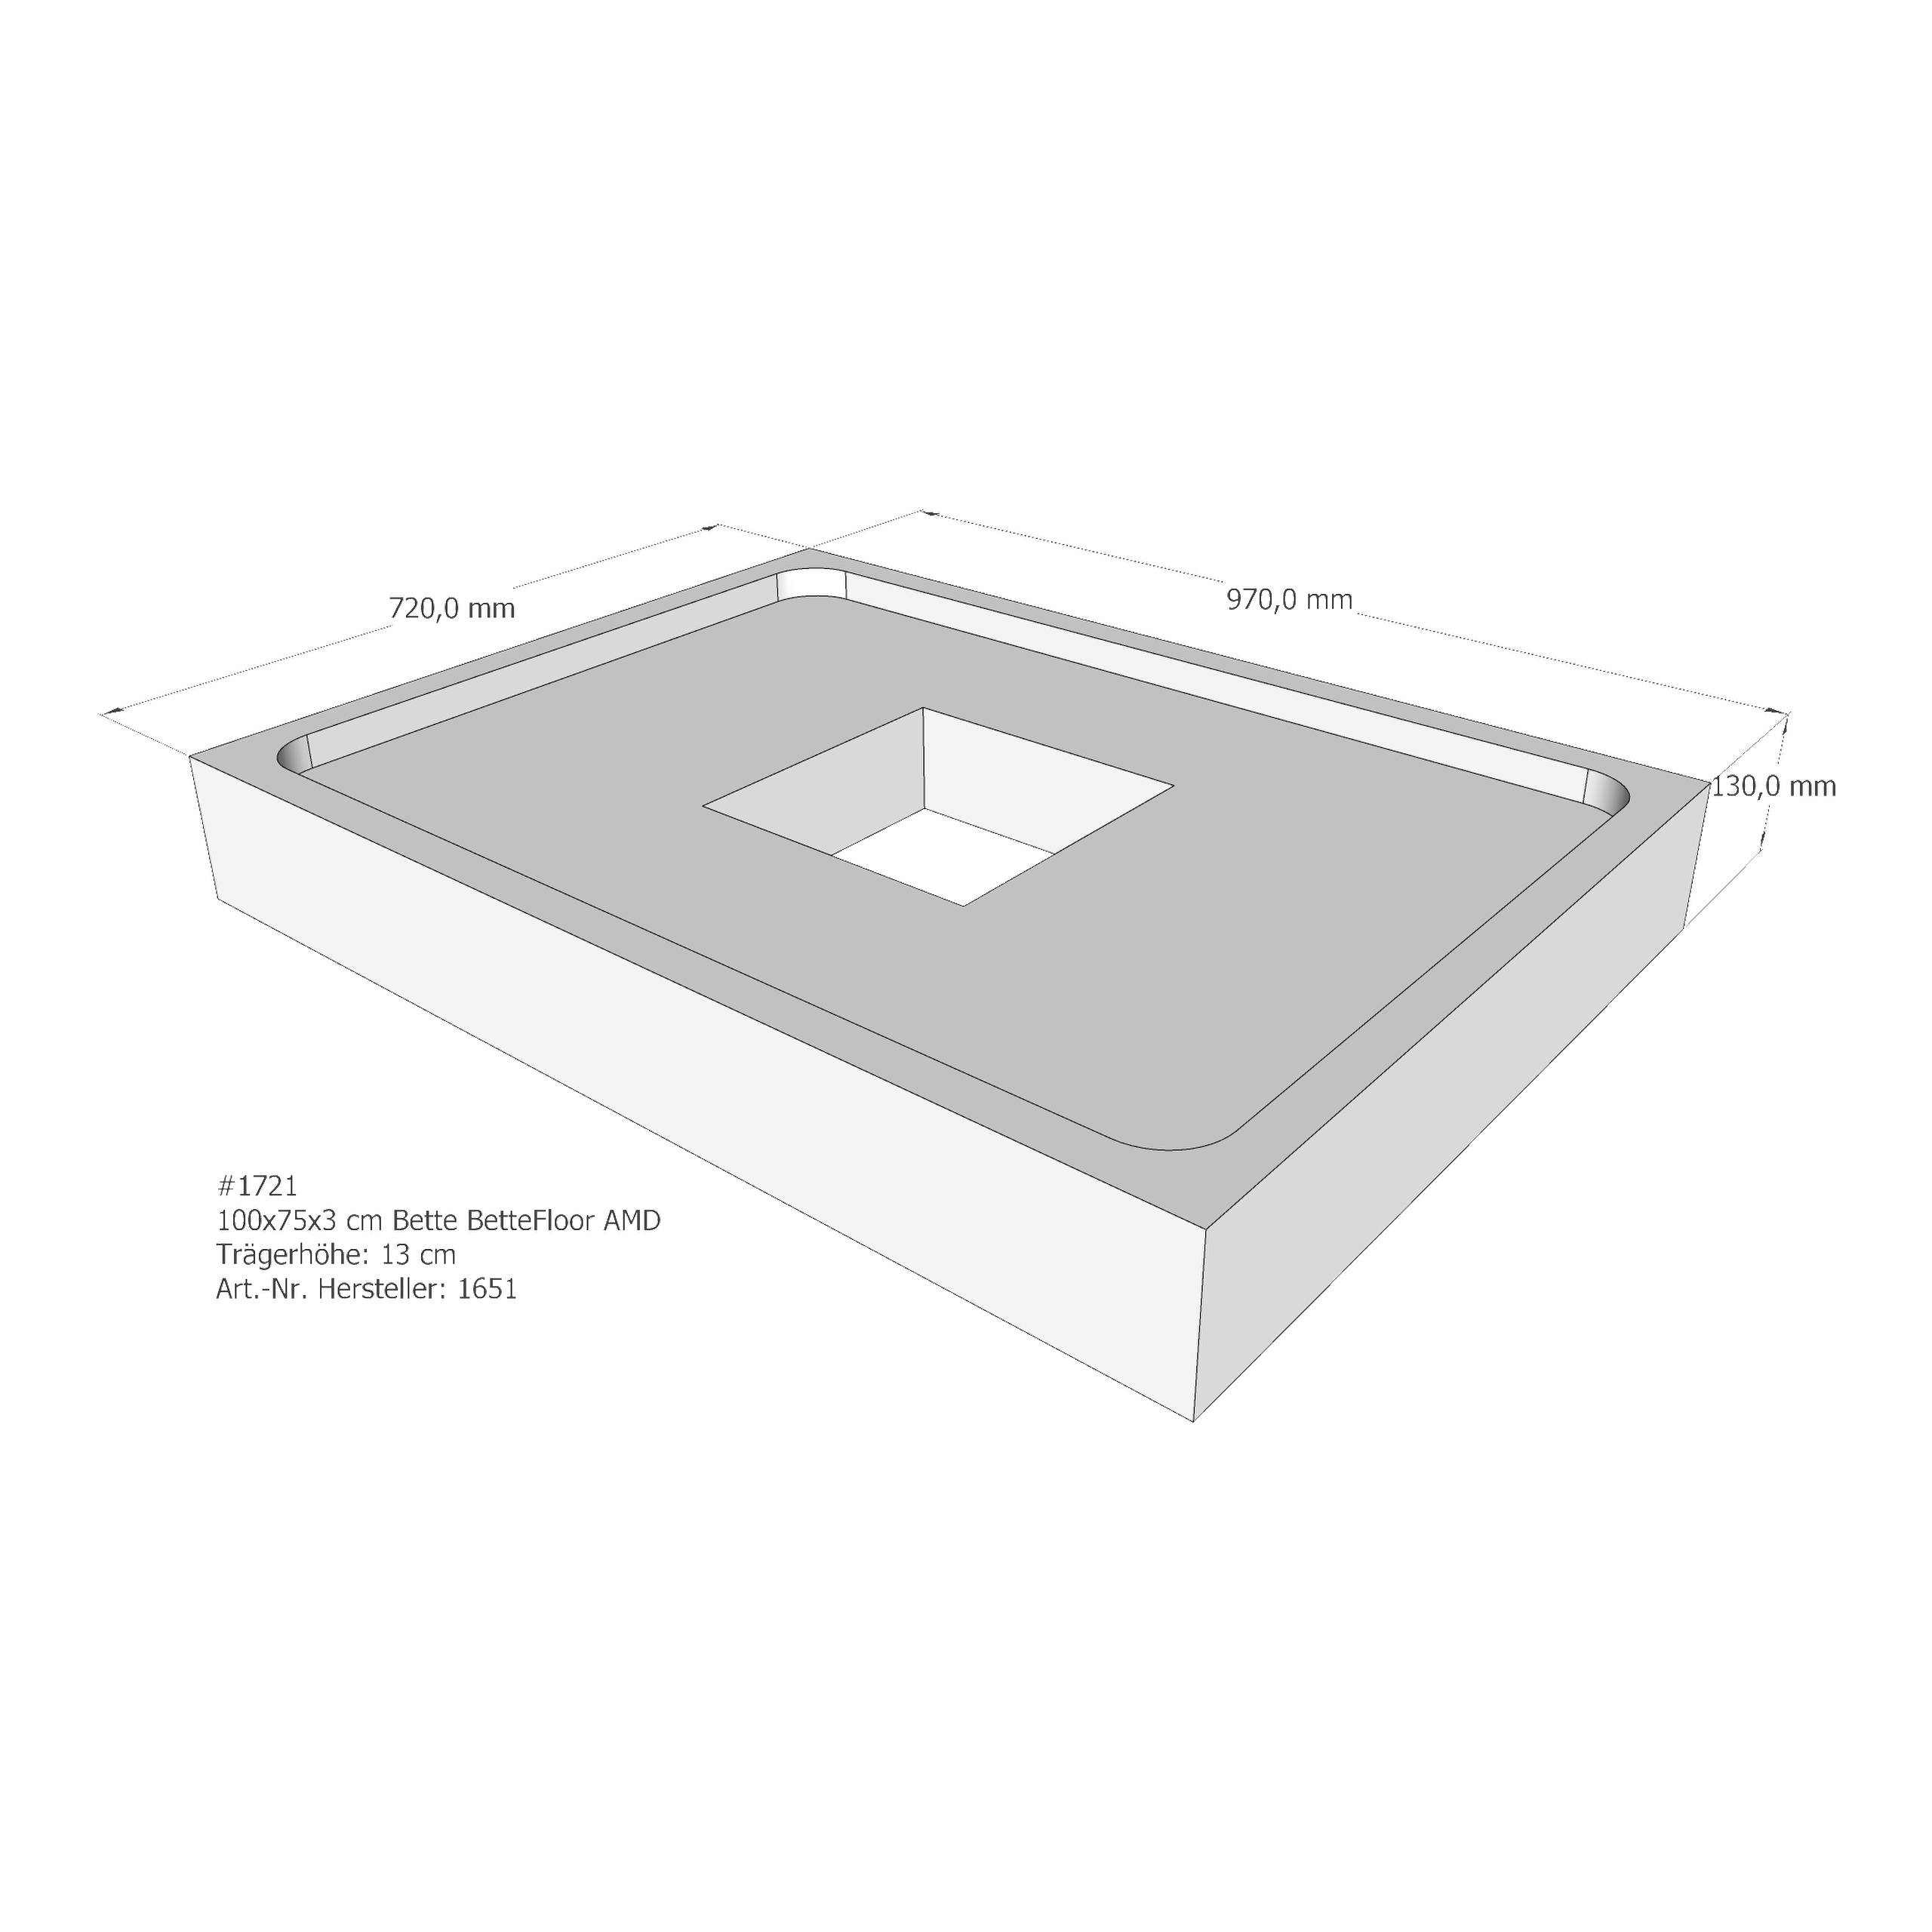 Duschwannenträger Bette BetteFloor 100x75x3 cm AMD